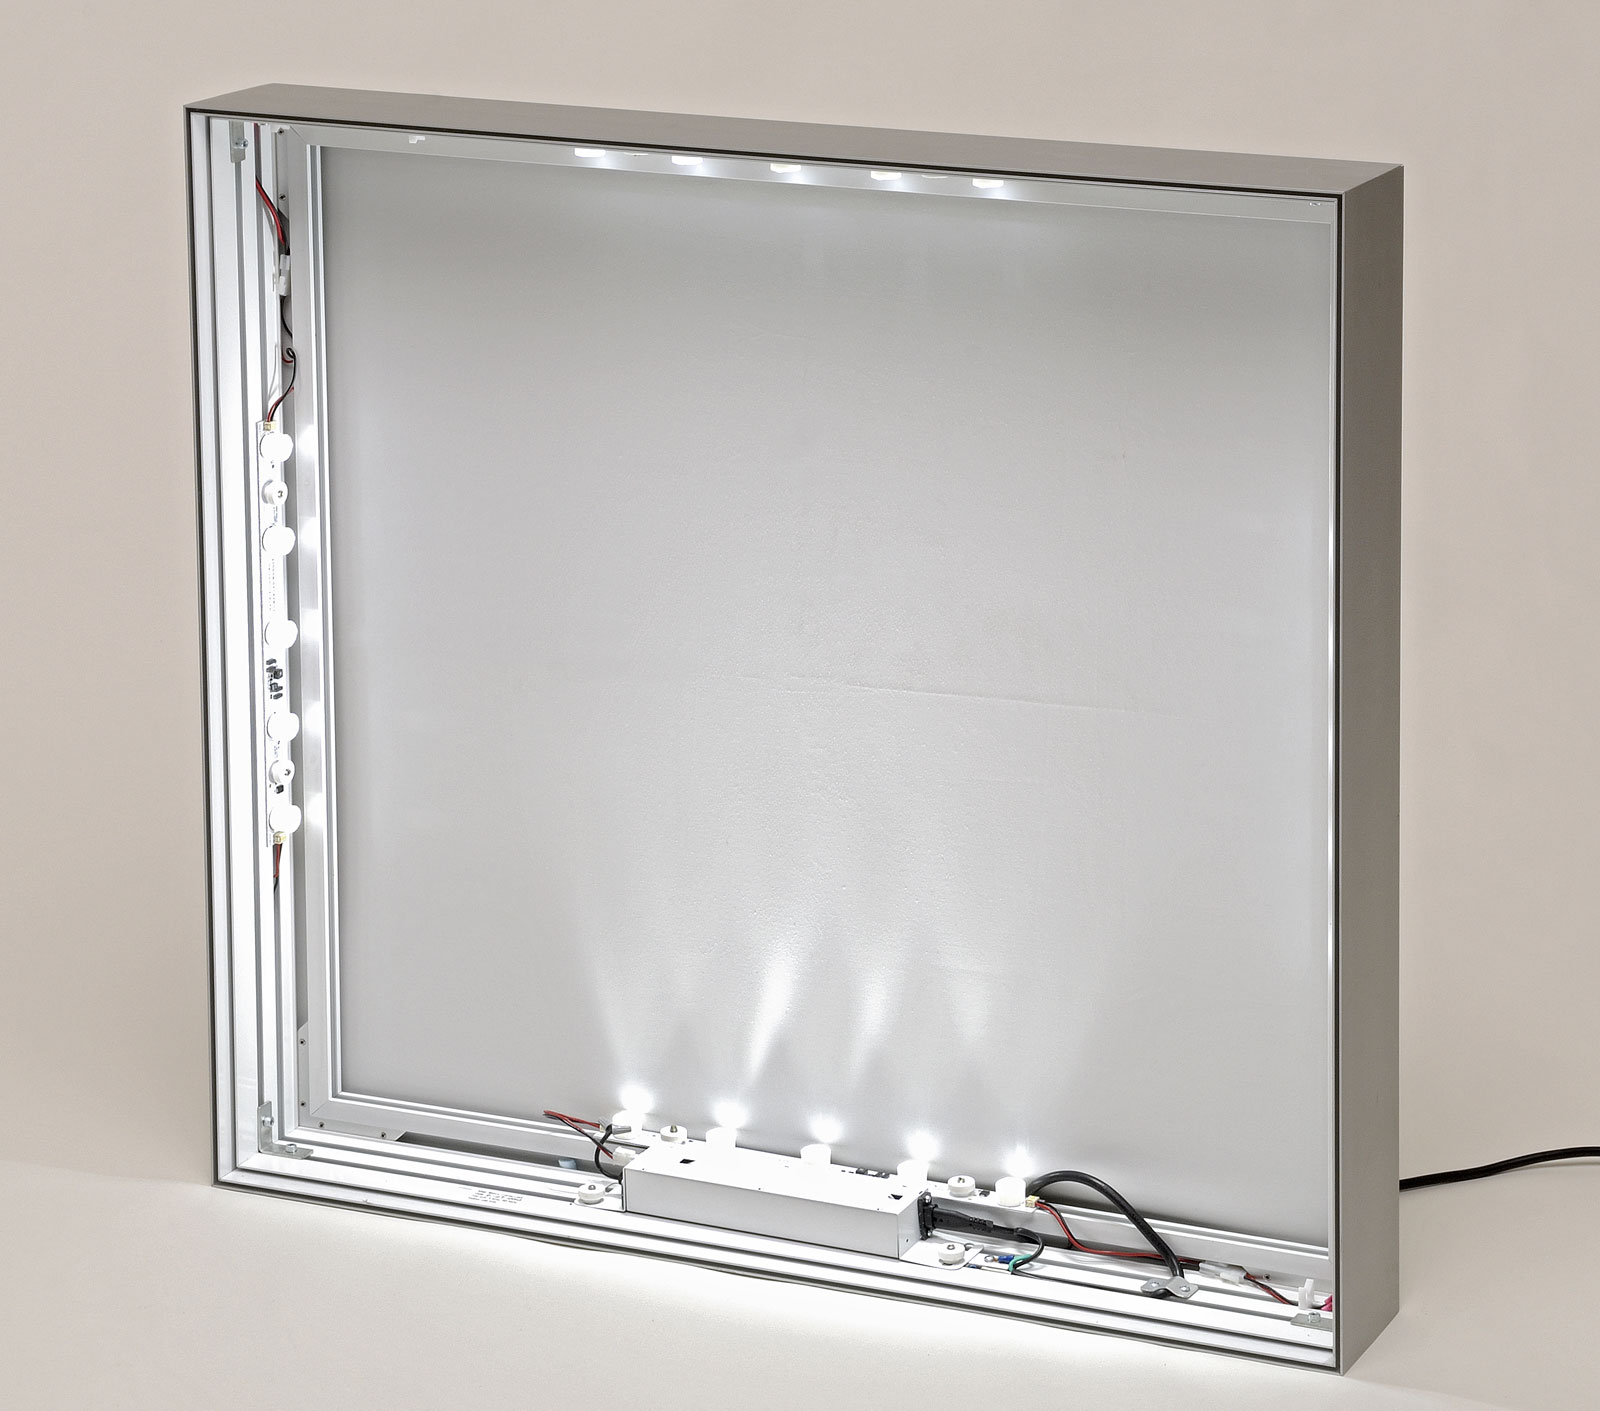 LED perimeter lighting for lightboxes